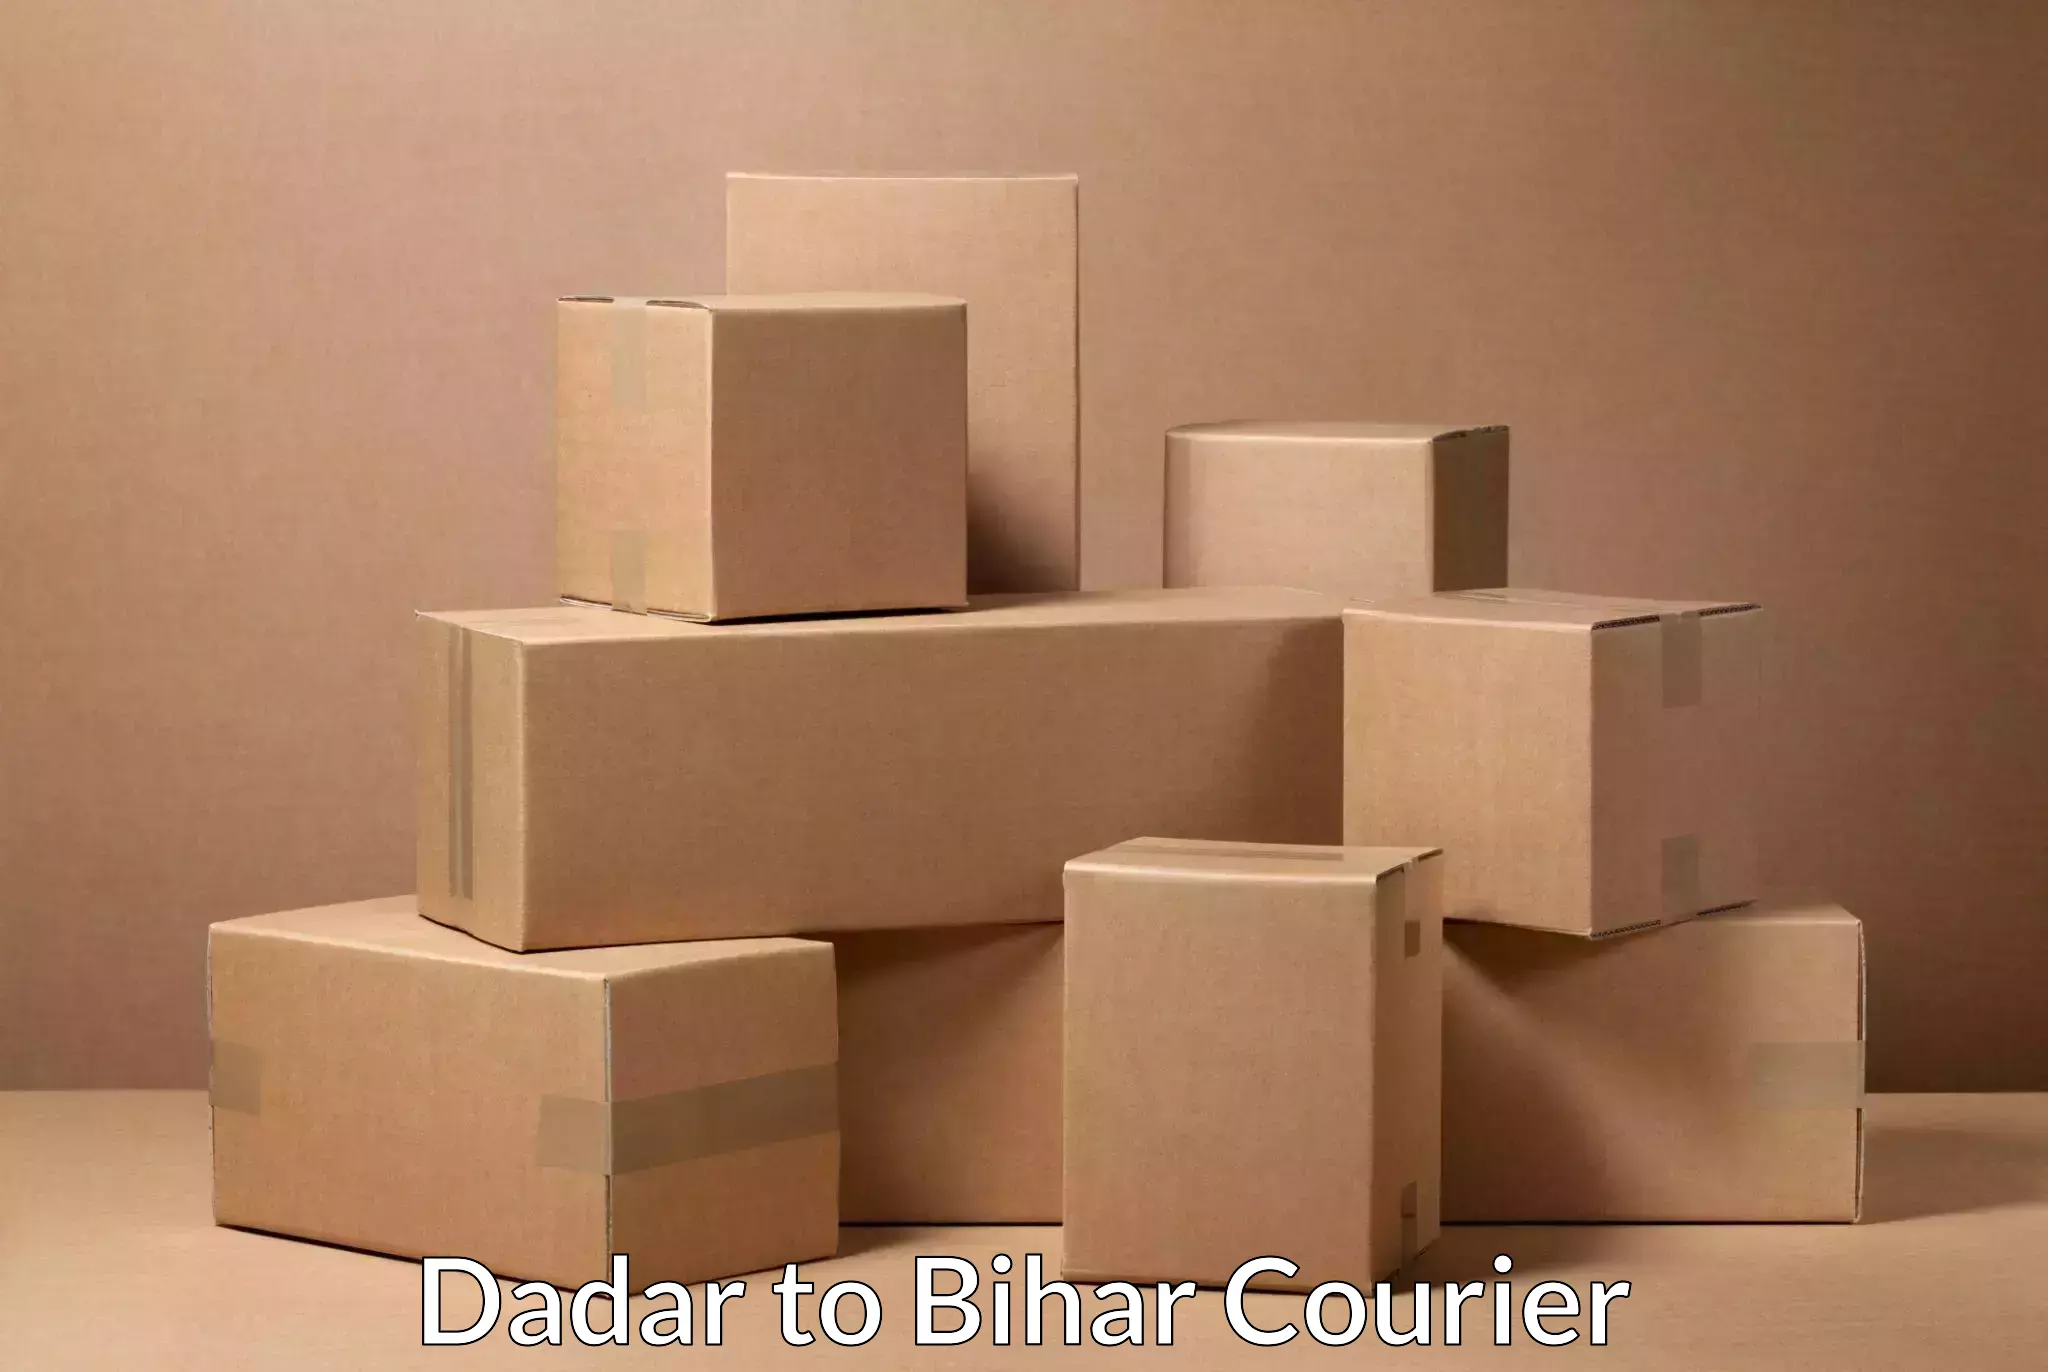 Cargo courier service Dadar to Bikramganj